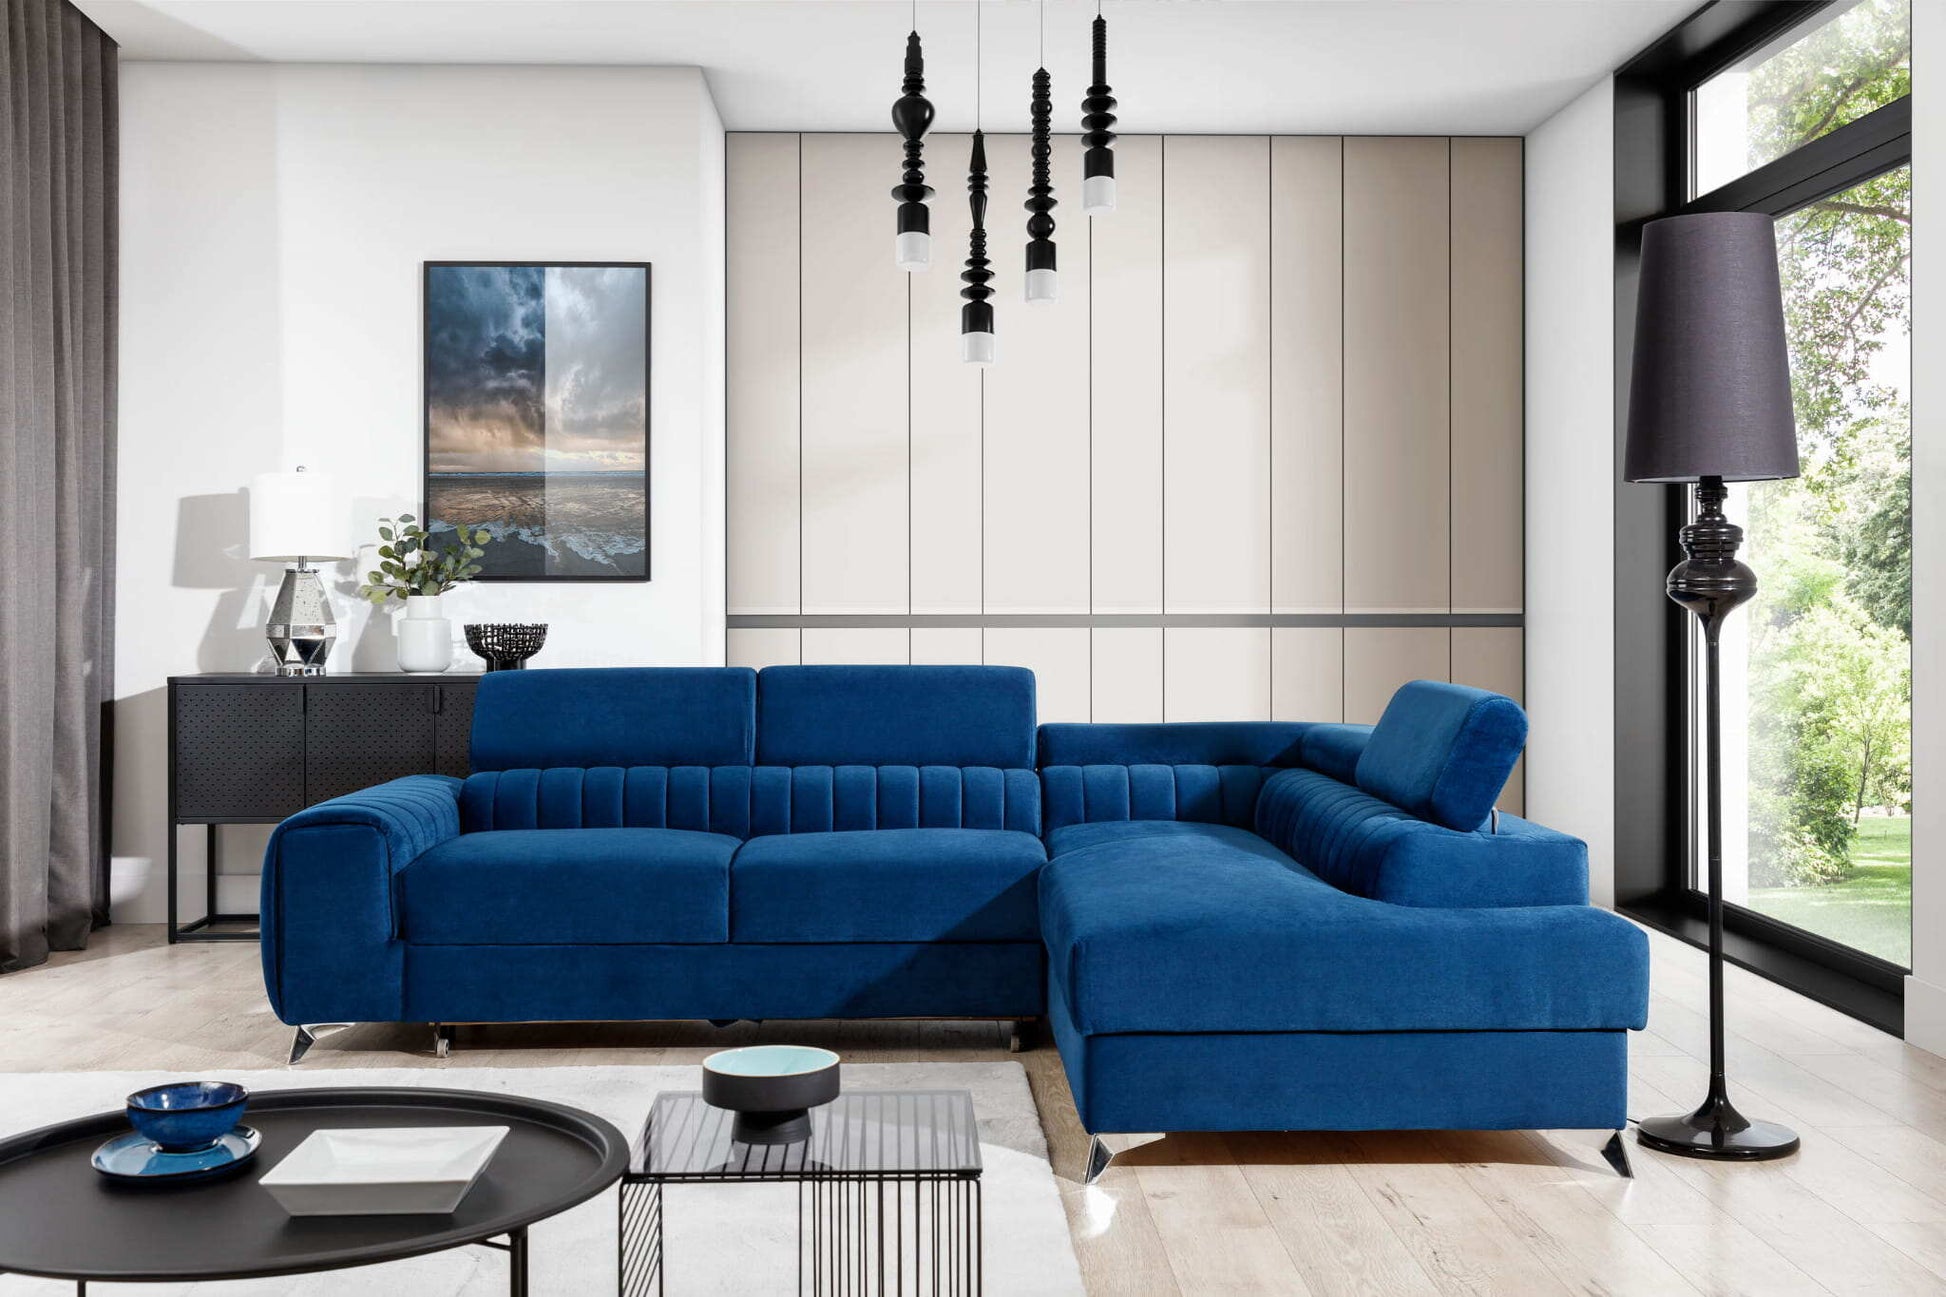 Wunderschöne Wohnlandschaft Laurence mit wunderschönem L-förmigem Sofa in blauer Farbe